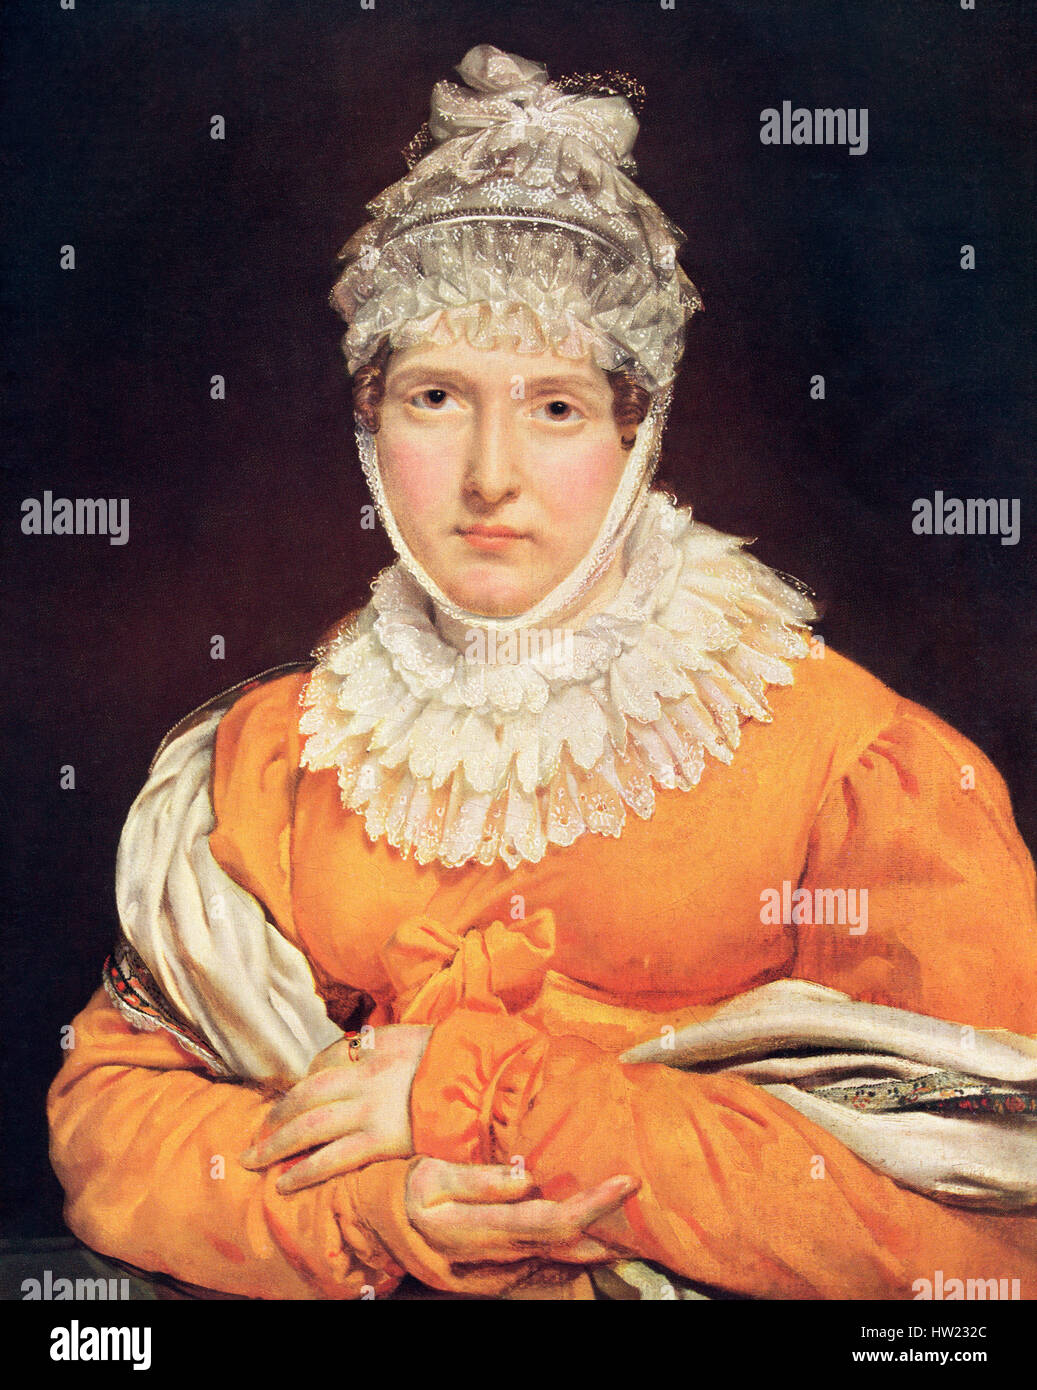 Portrait von Jeanne-Fran çoise Julie Adélaïde Récamier, 1777 - 1849, alias Madame Récamier und Juliette. Französische socialite. Nach dem Gemälde von Antoine-Jean Gros aka Baron Gros. Stockfoto